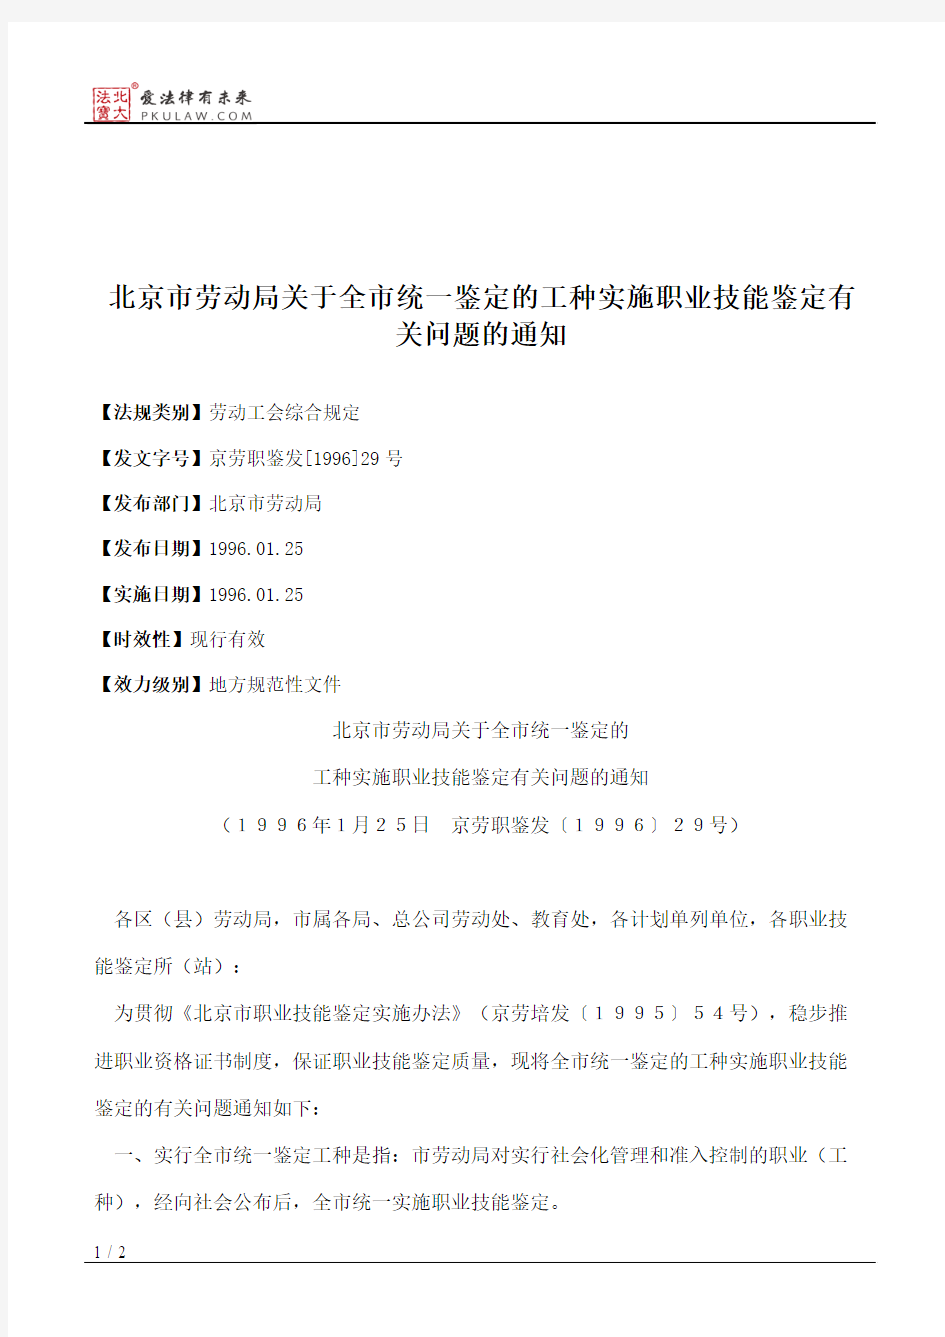 北京市劳动局关于全市统一鉴定的工种实施职业技能鉴定有关问题的通知